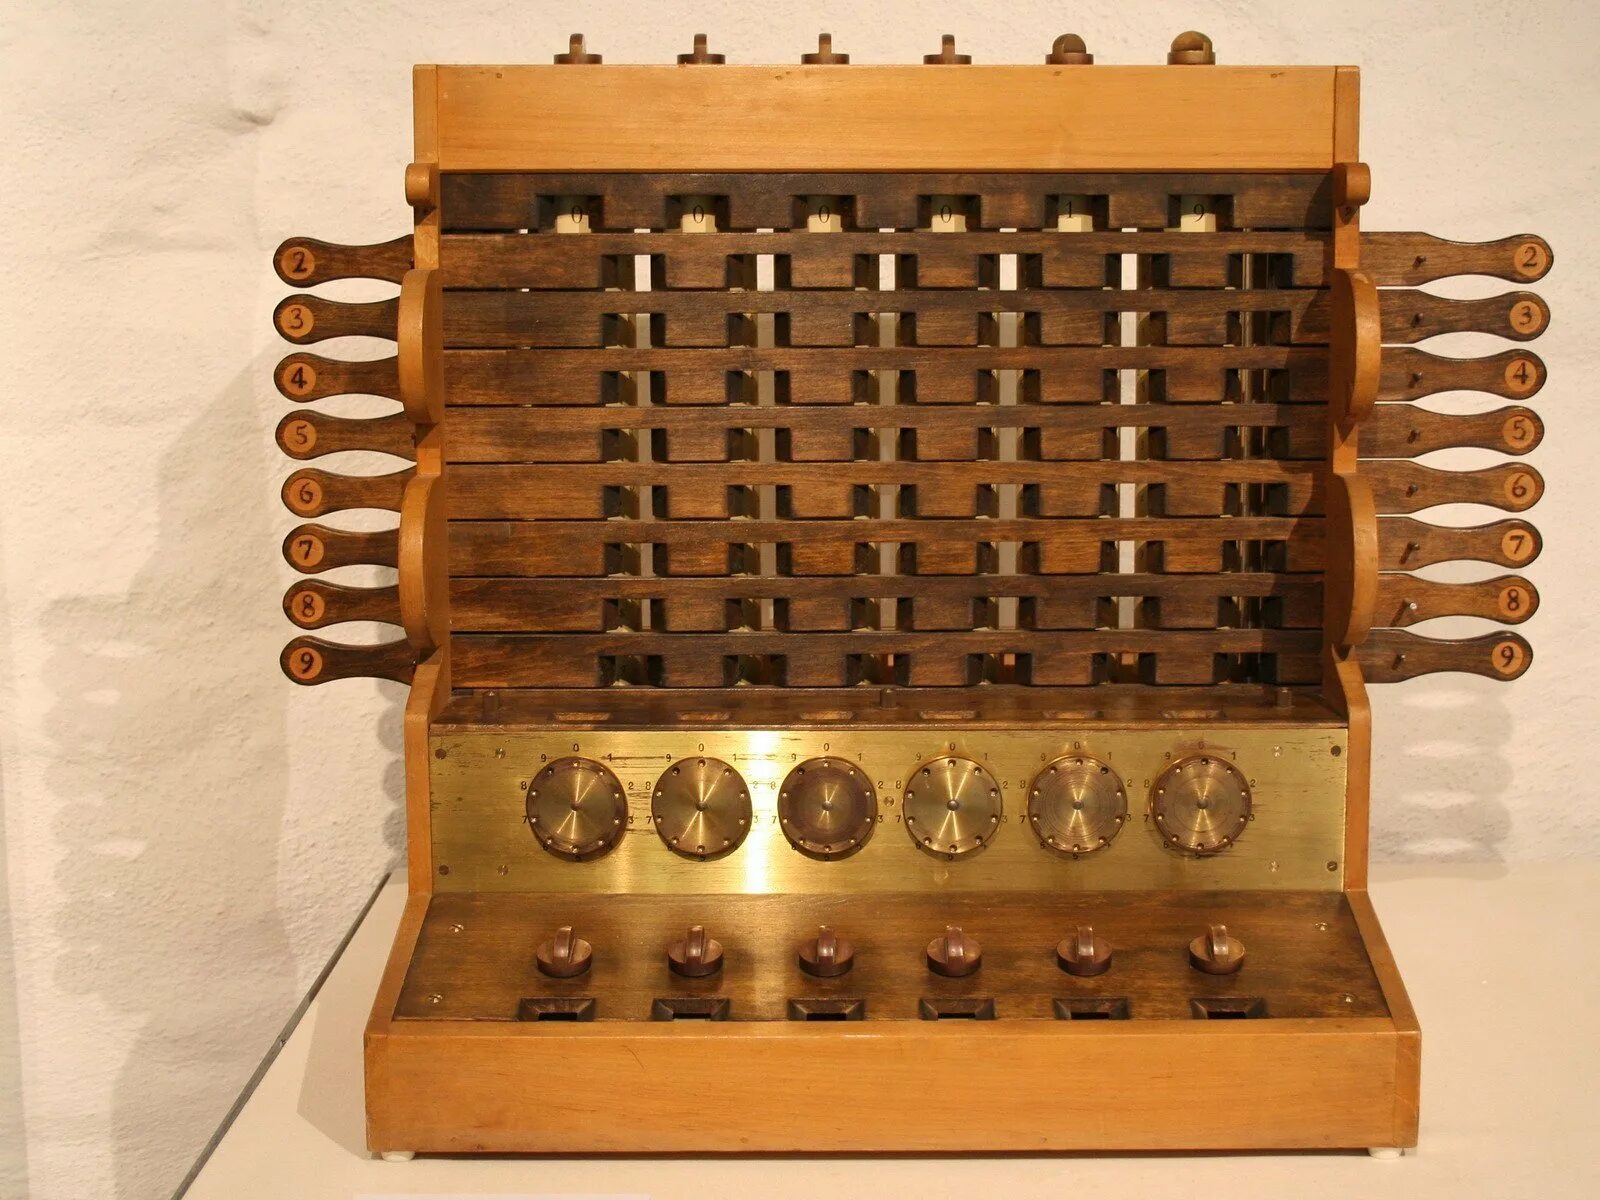 Первая машина механика. Счетная машина Вильгельма Шиккарда. Считающие часы Вильгельма Шиккарда. Первый механический калькулятор Вильгельма Шиккарда. Механическая счетная машина Шикарда 1623.